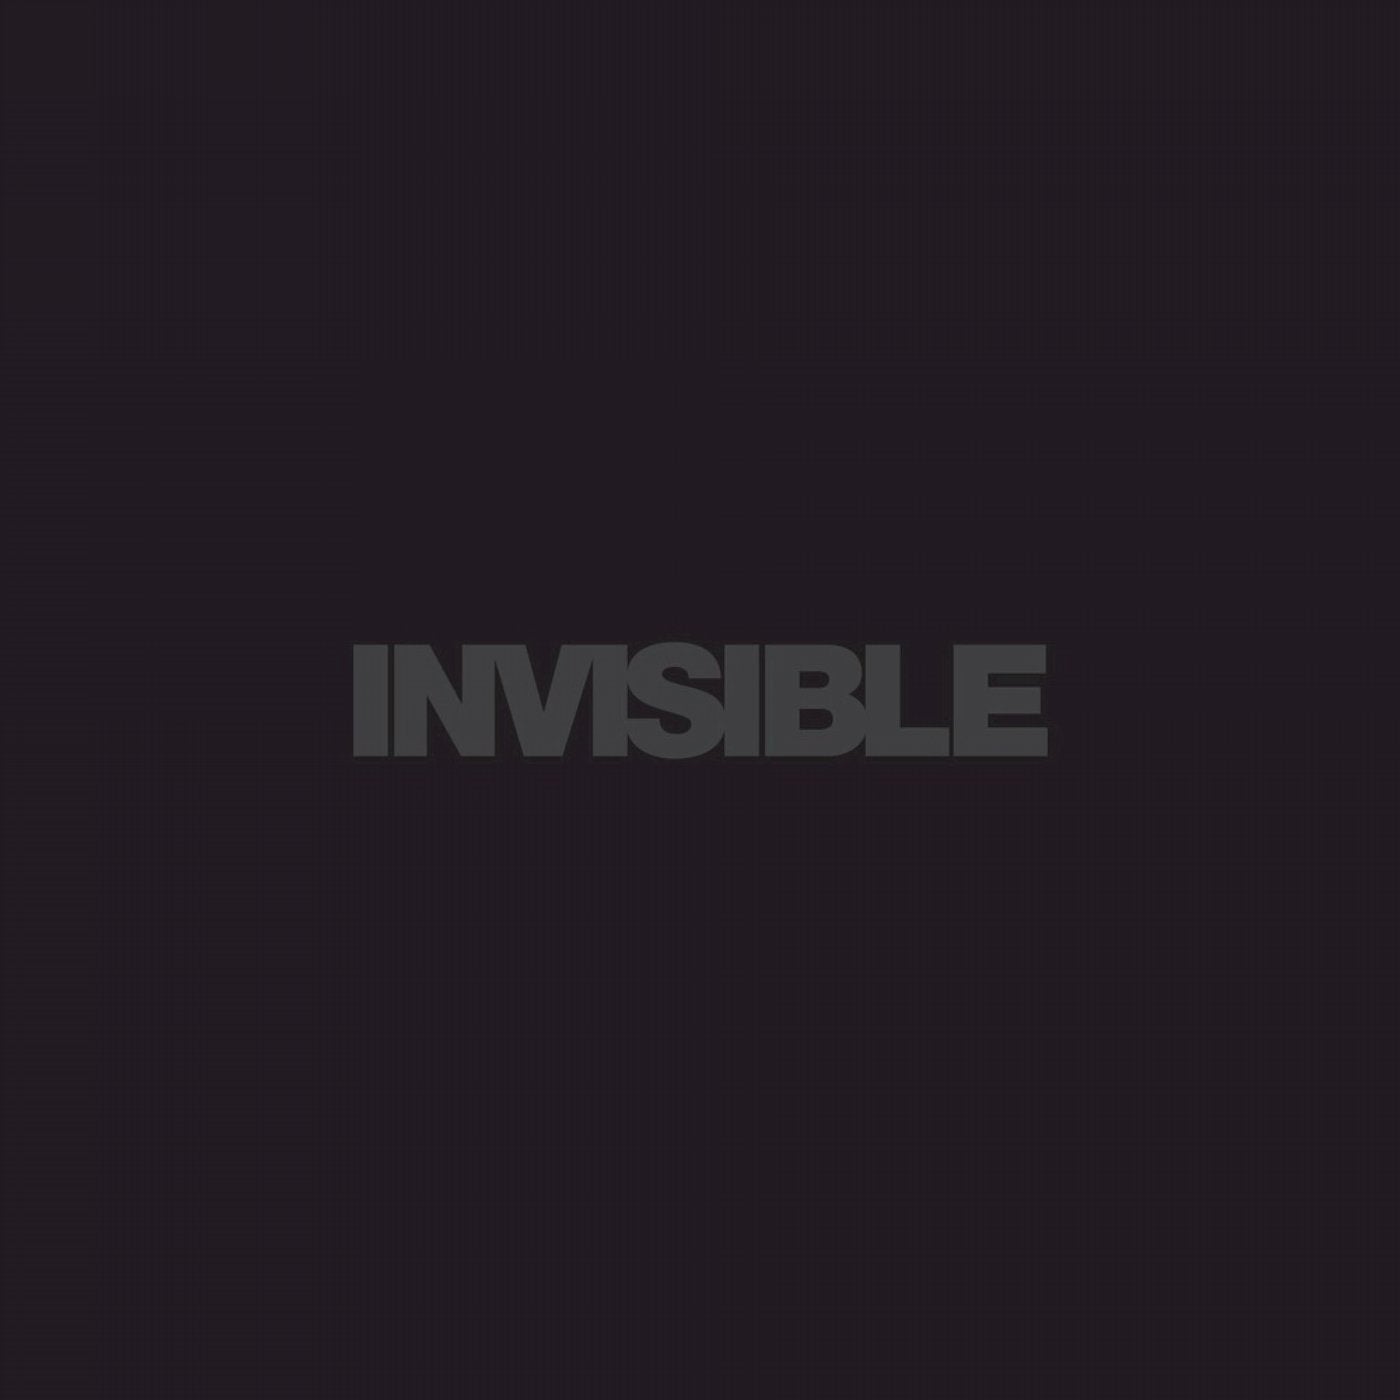 Invisible 016